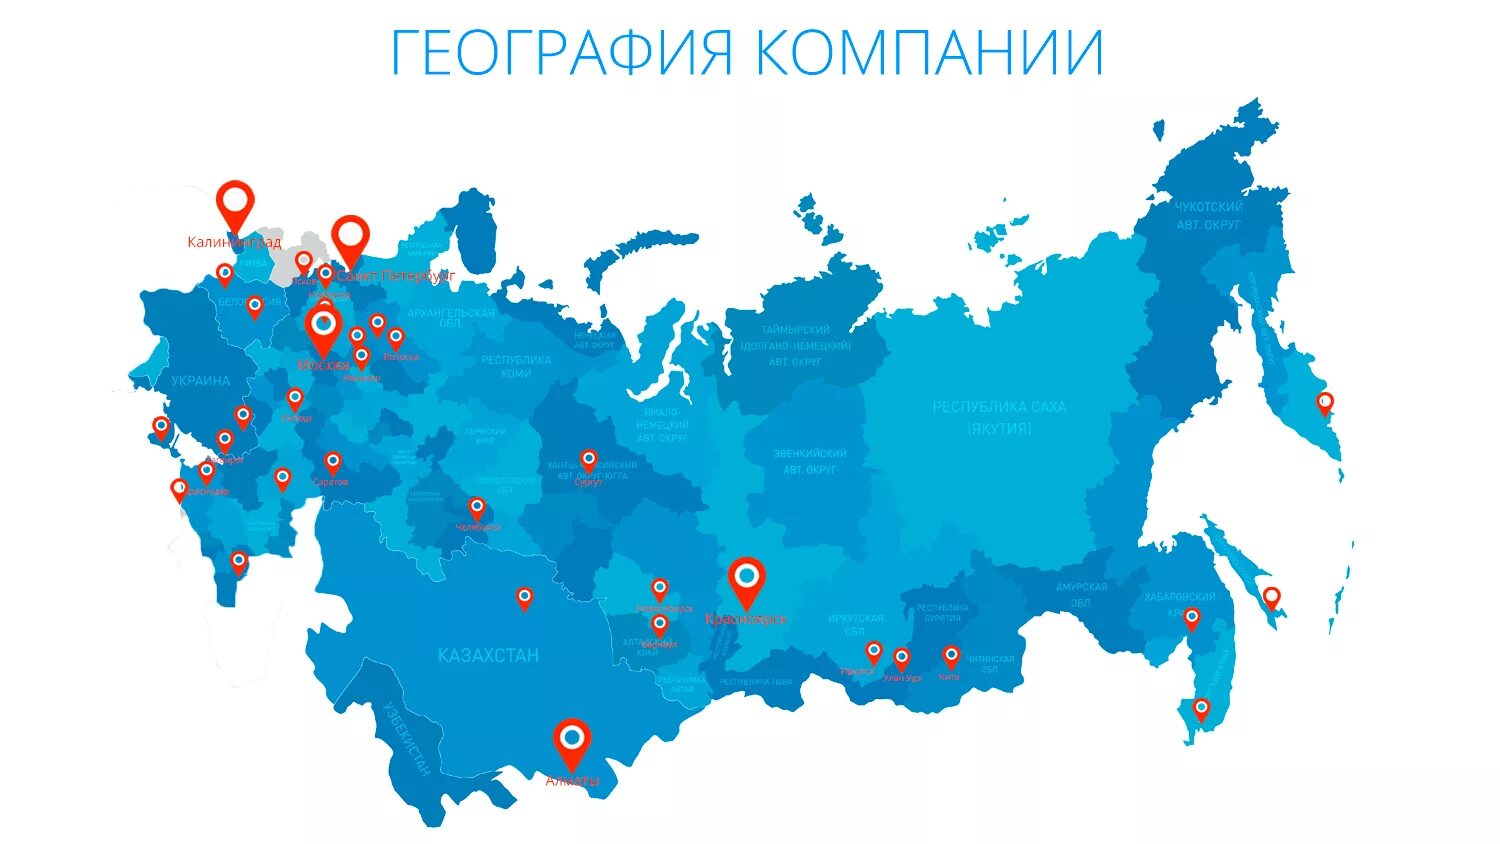 Класс точка рф. Карта России. География работы компании. География присутствия компании. Карта мредприятий Росси.